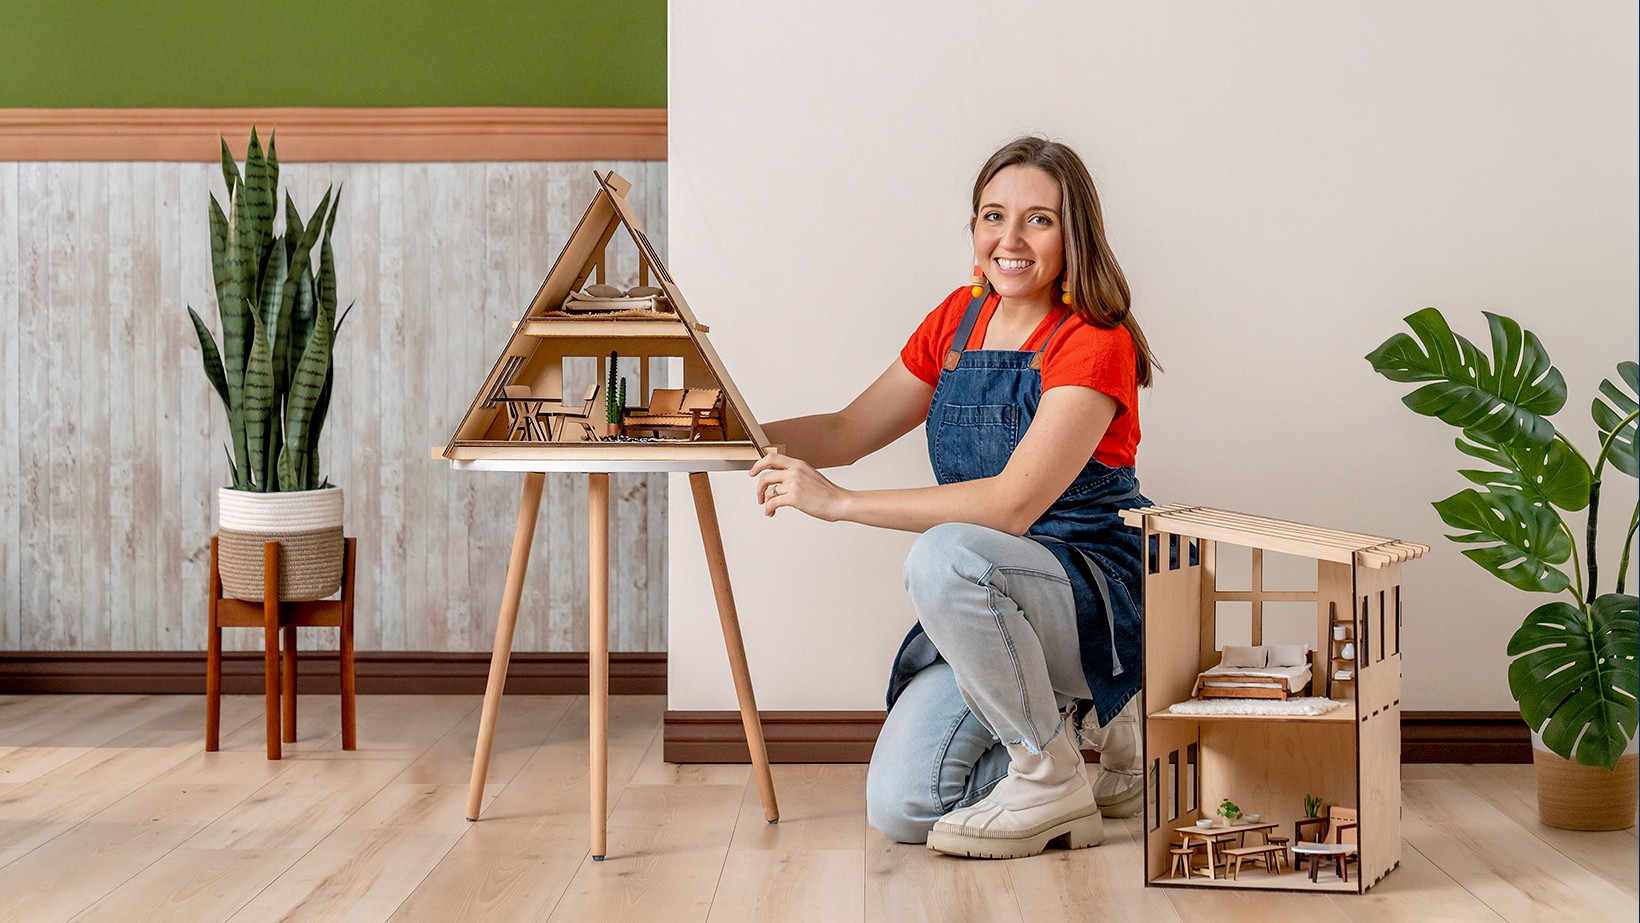 Corso online - Arredamento in miniatura per case di bambole fai da te  (Chelsea Andersson)